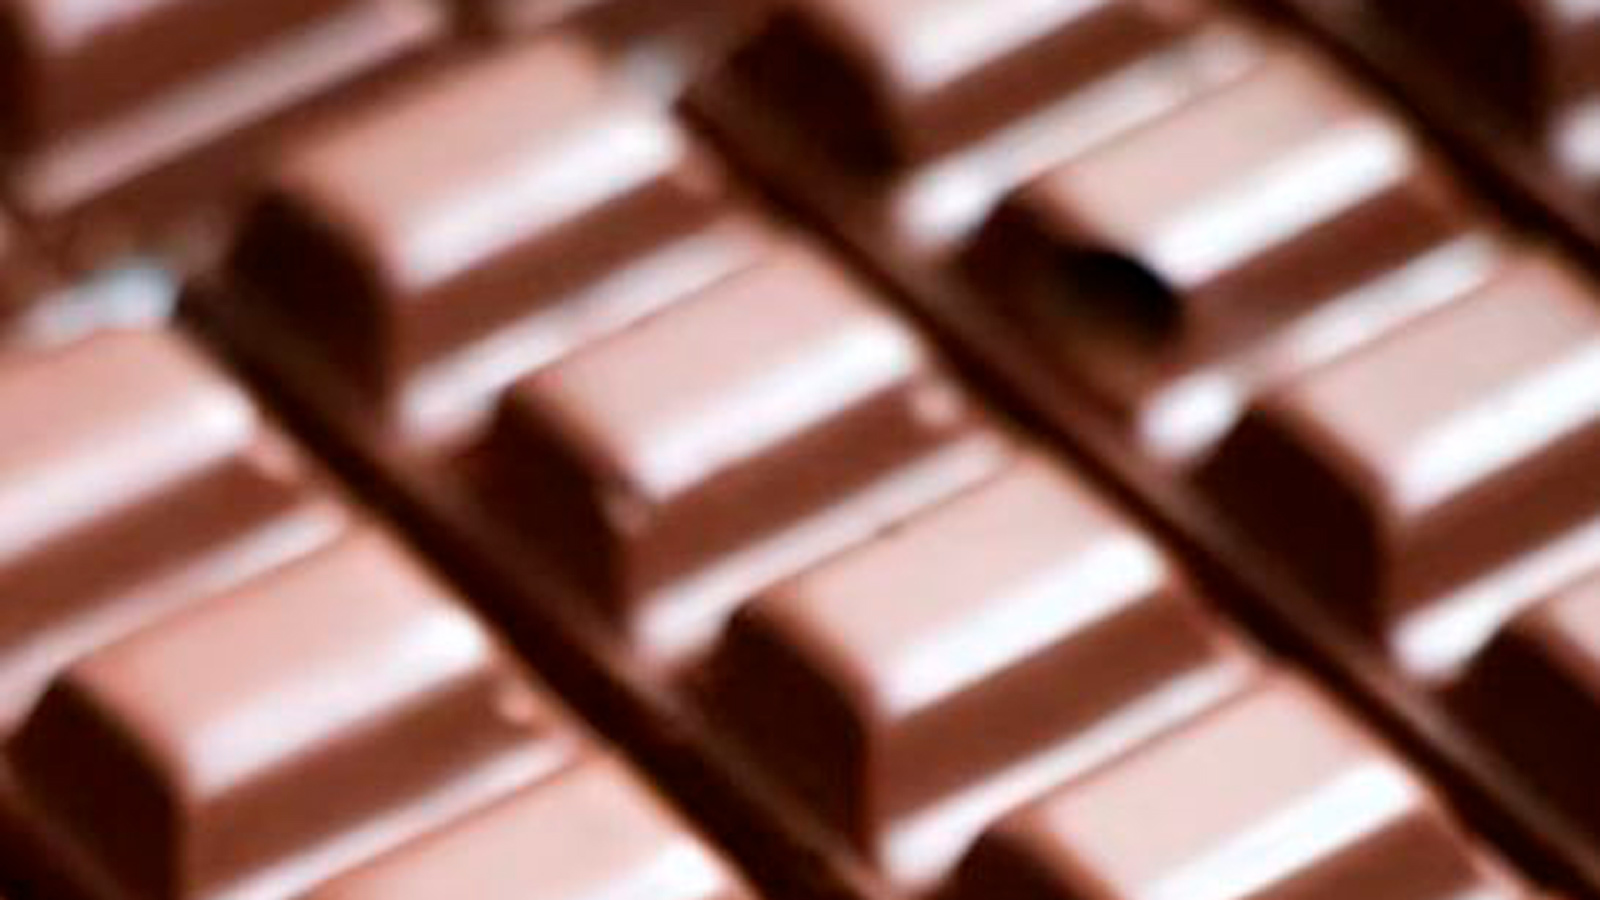 Alerta sanitaria: ingredientes no etiquetados en chocolate Milka